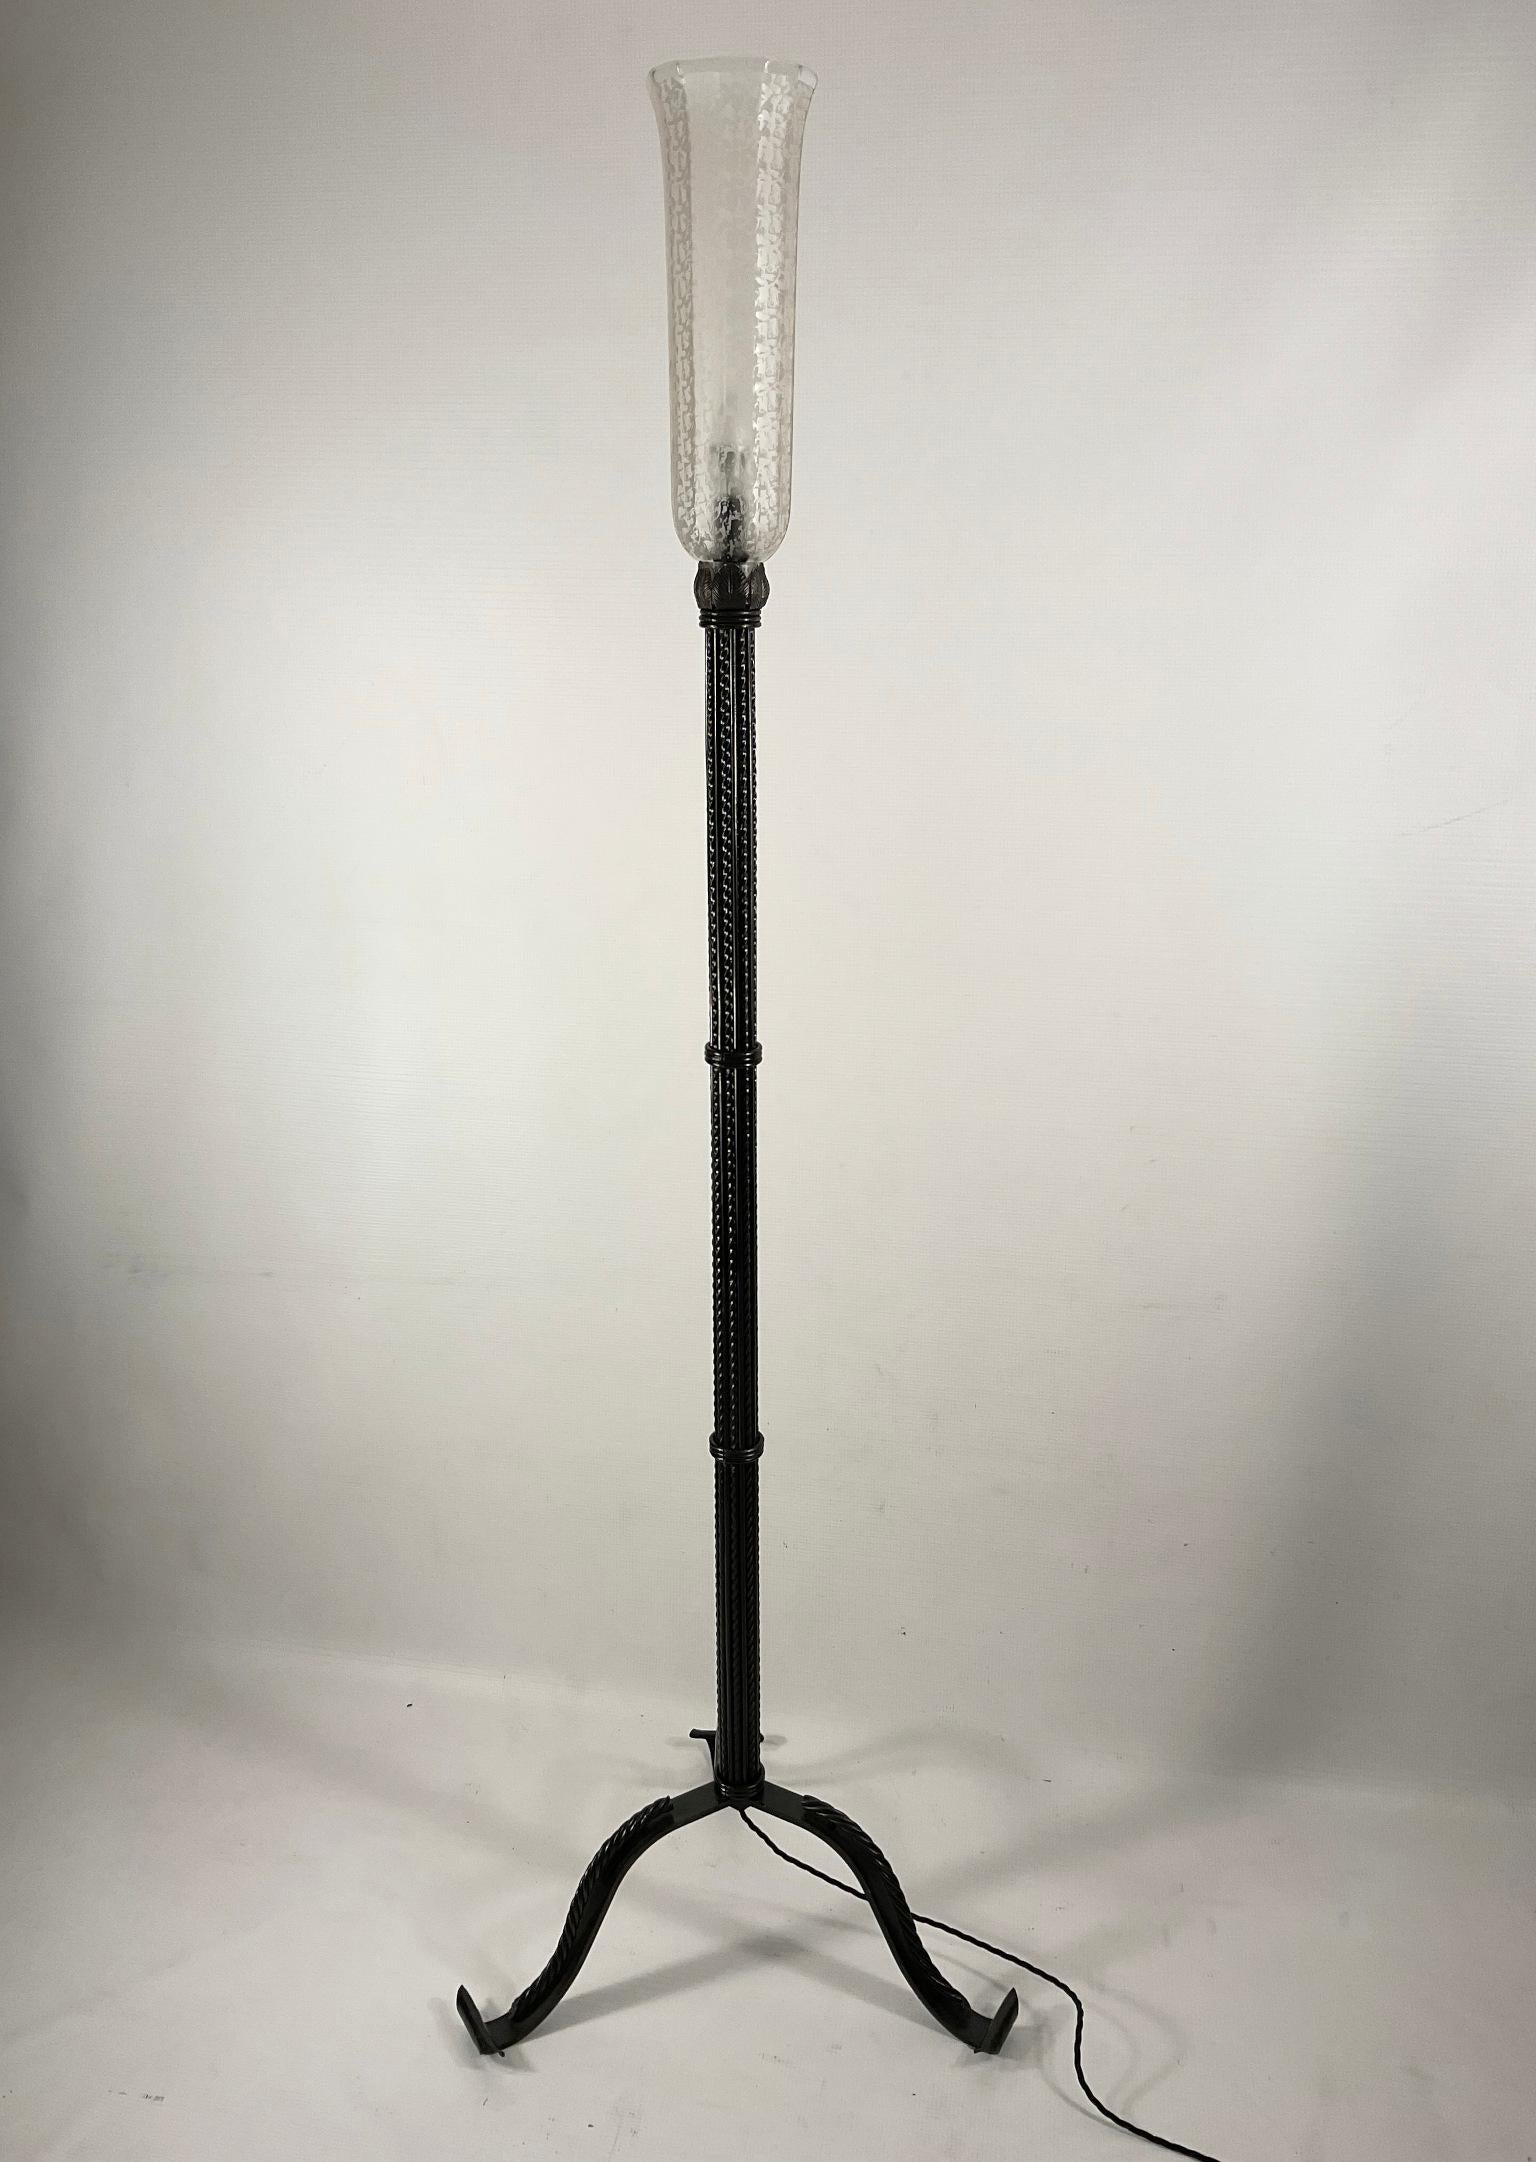 Lampadaire Art Déco français des années 1920 avec abat-jour en verre gravé.
Ce lampadaire représente un exemple de la qualité et du savoir-faire de la ferronnerie d'art française. Ce travail rappelle les grands noms et maîtres de la ferronnerie